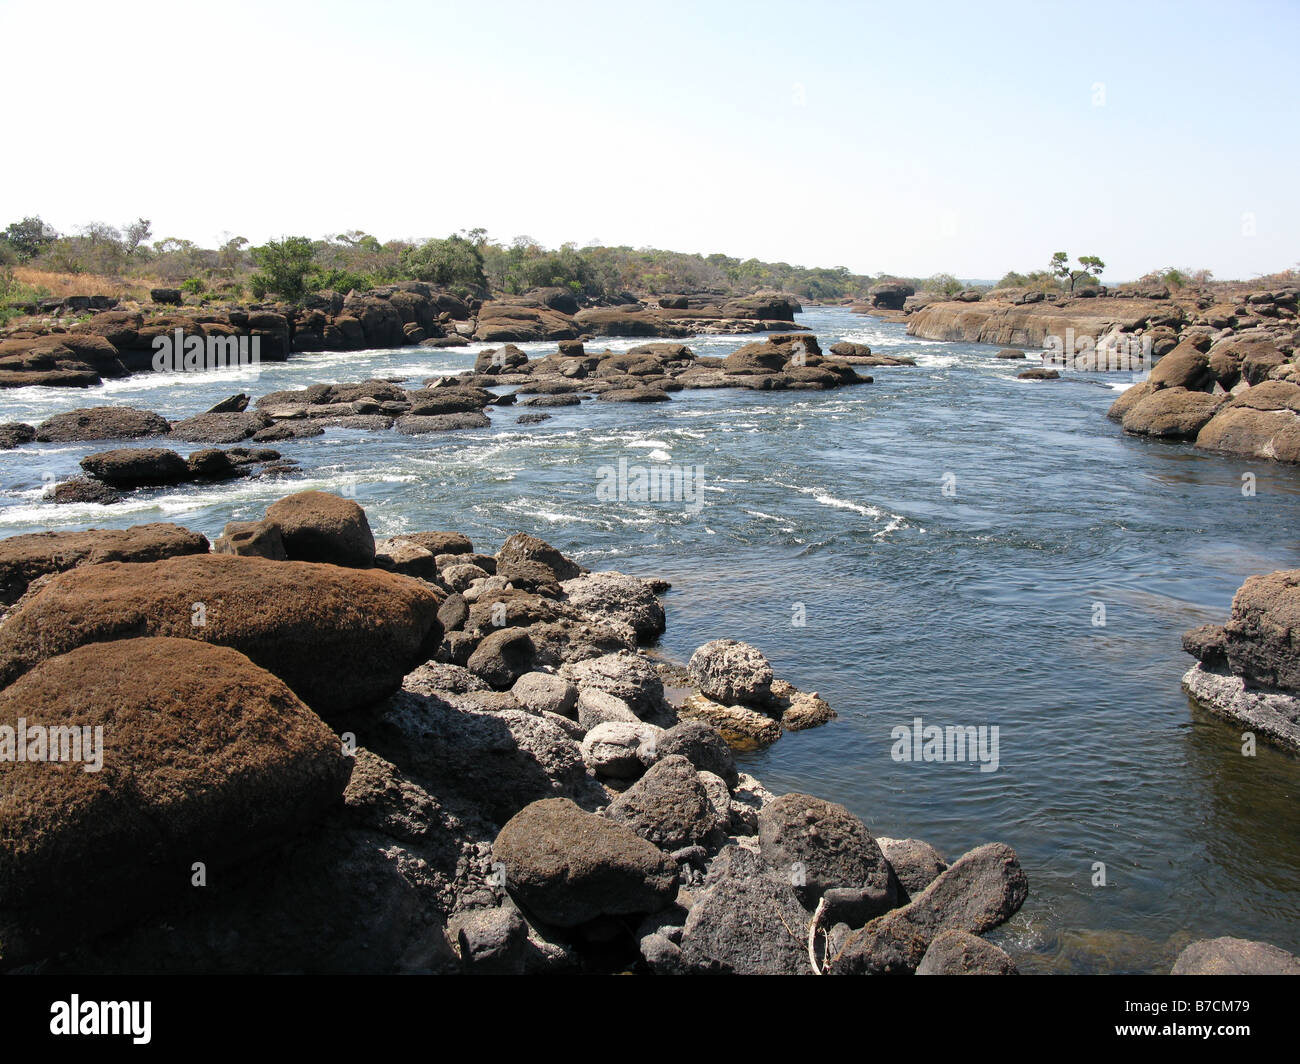 Nafutu Wasserfälle und Stromschnellen flussaufwärts des Mambilima fällt am Fluss Luapula ein Nebenfluss des Kongo Demokratische Republik Kongo Stockfoto